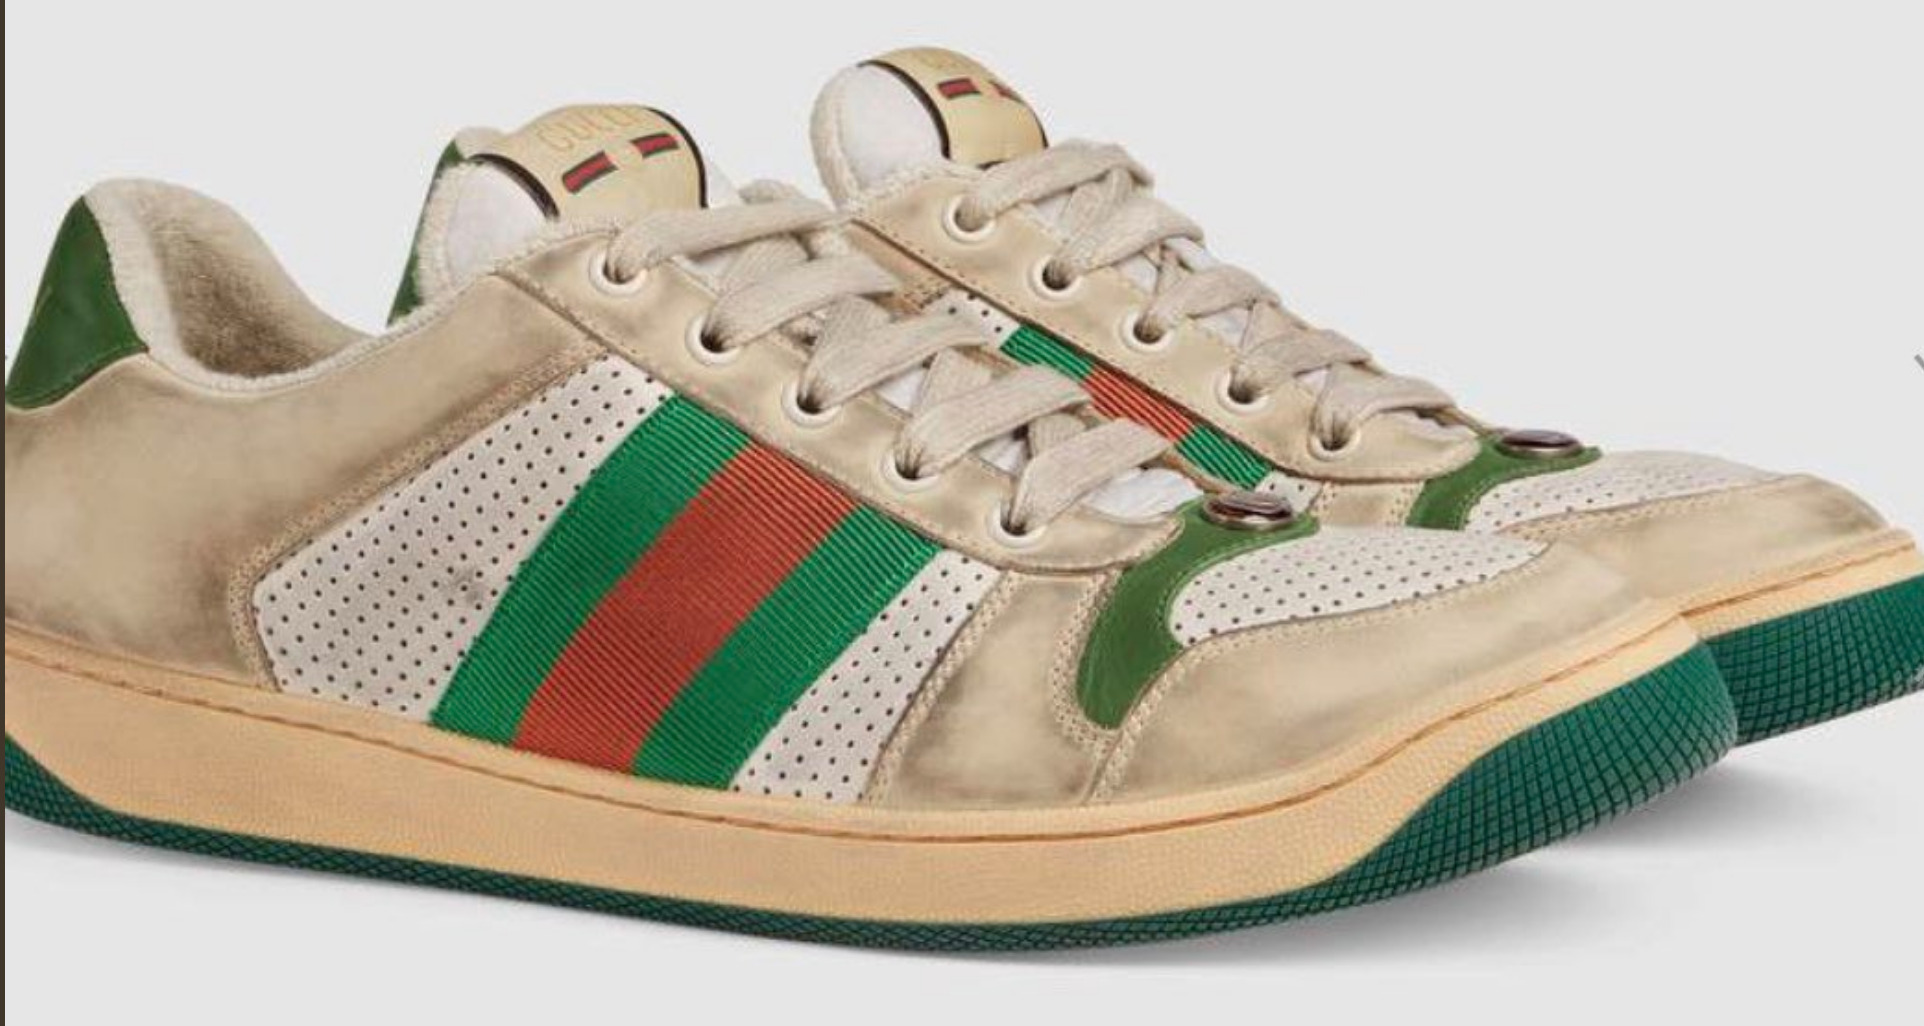 Emisoras Unidas Gucci lanza al mercado unos zapatos deportivos 'de segunda mano' por 870 dólares y la Red explota .